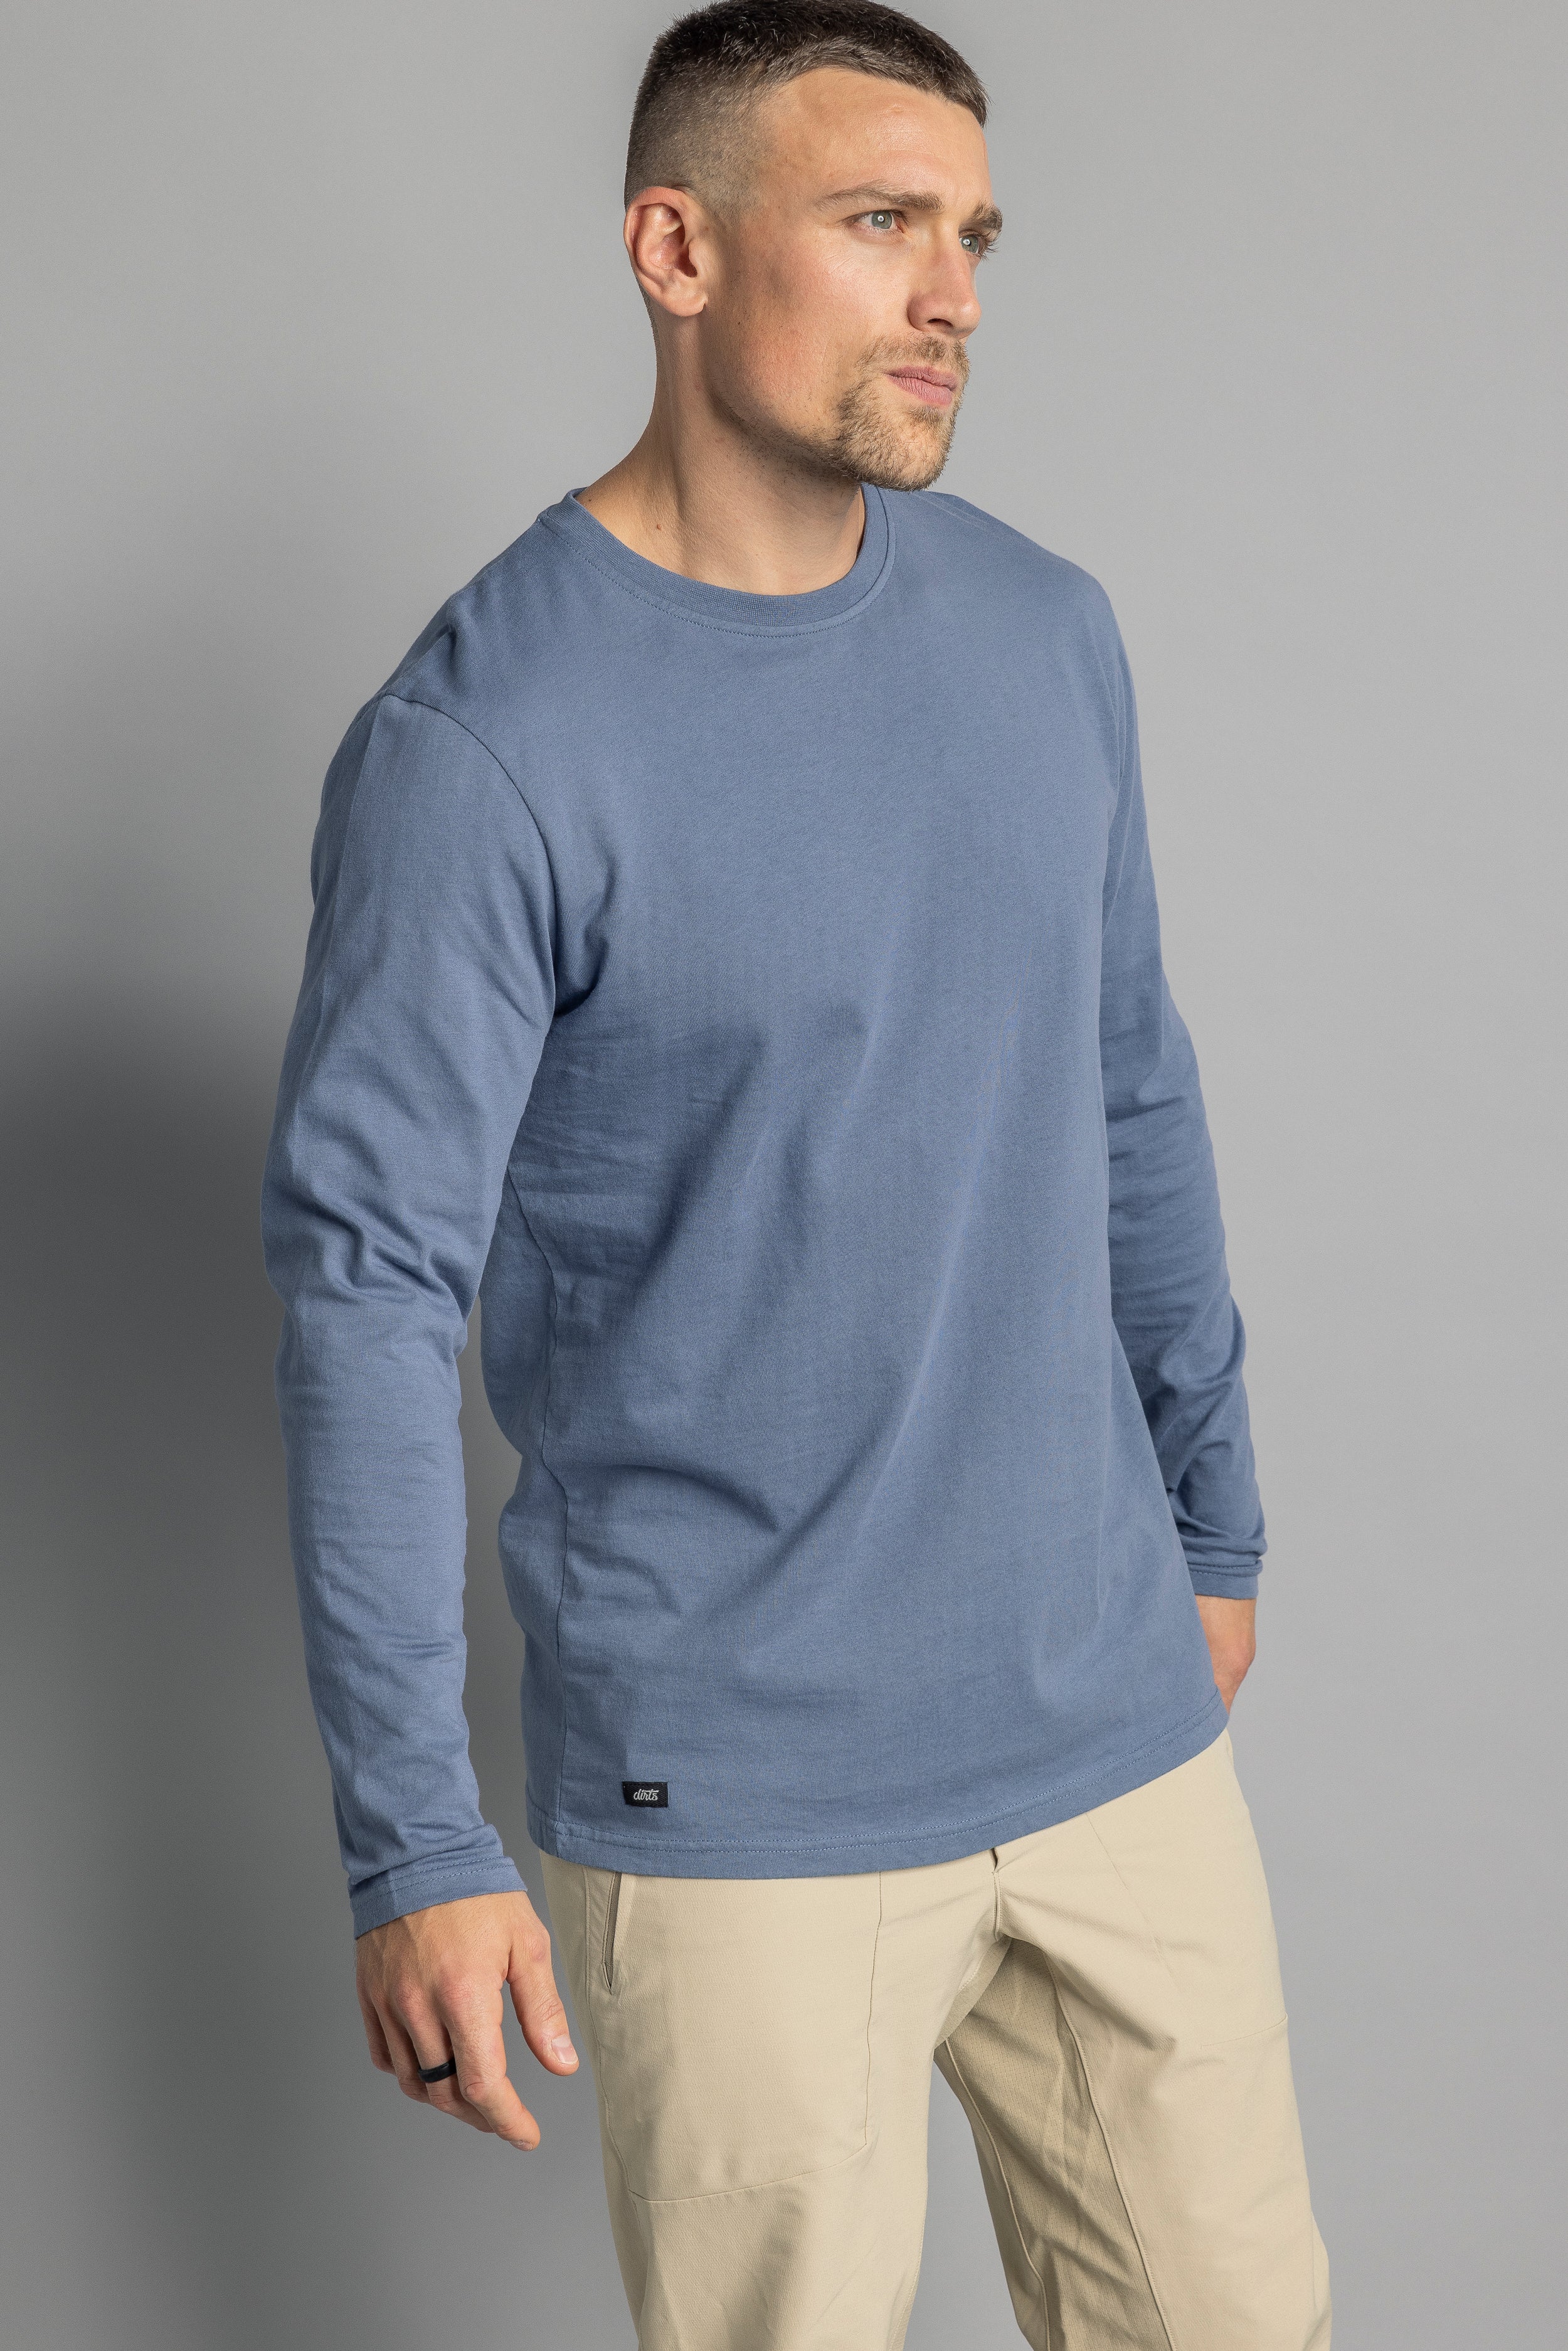 Blaues, langärmliges T-Shirt aus recycelter Baumwolle von DIRTS